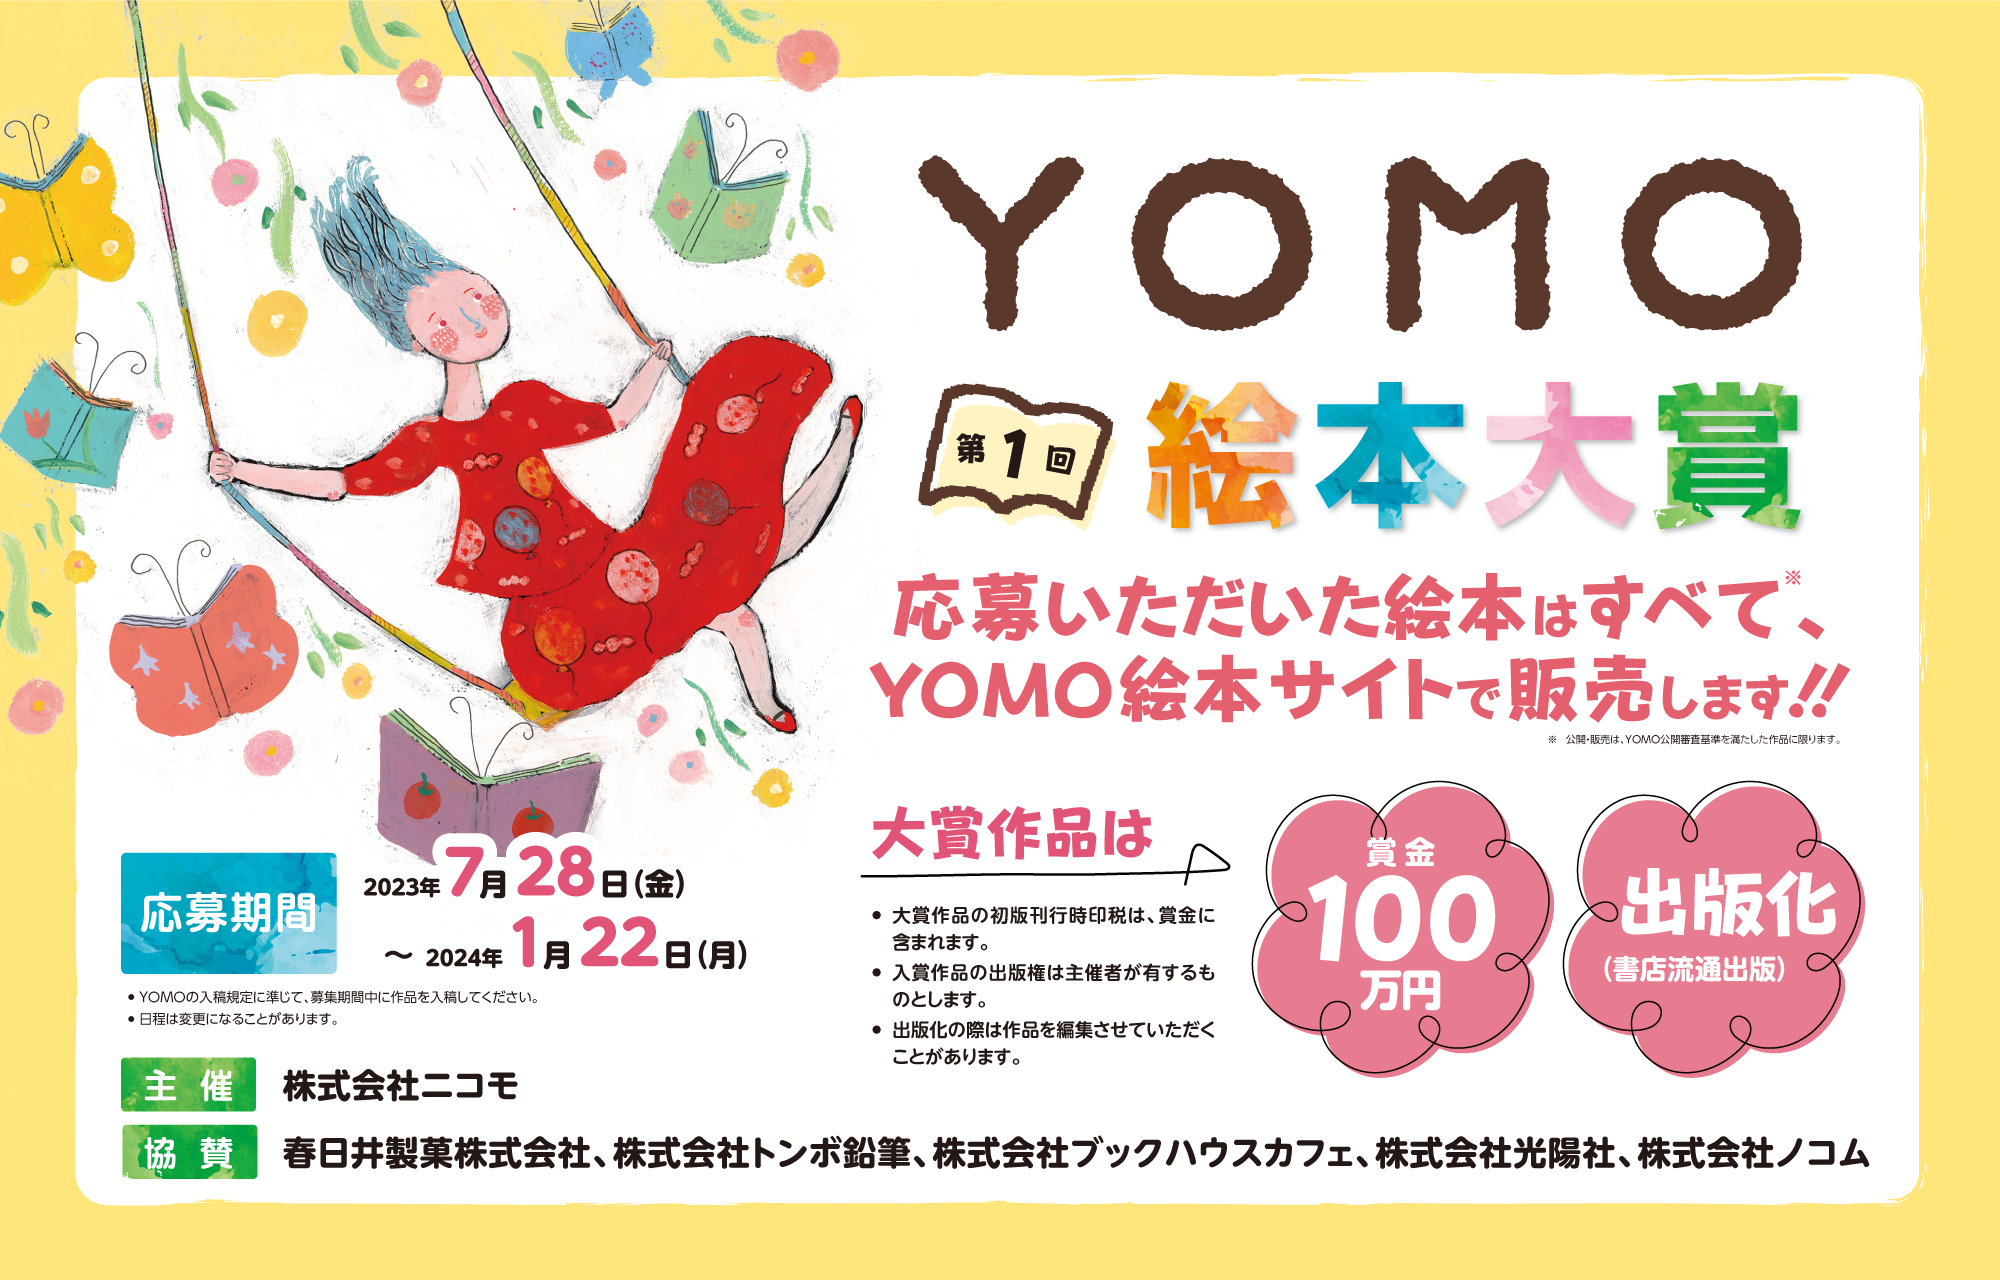 絵本作家デビューを目指すあなたへ。「第1回YOMO絵本大賞」でその夢を